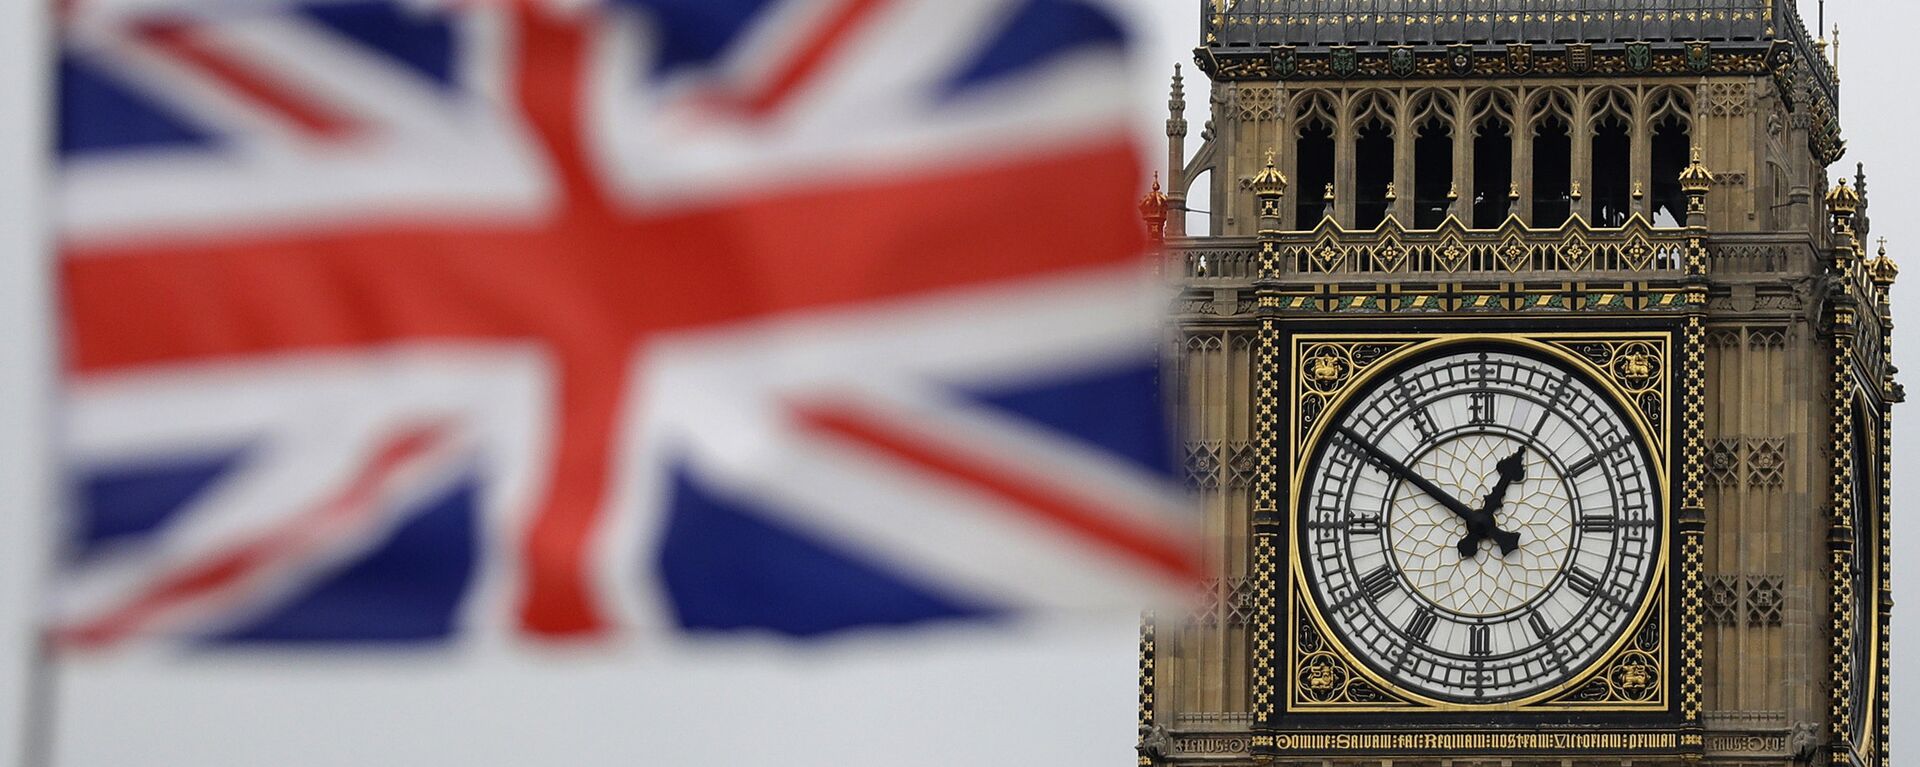 Застава Велике Британије испред Биг Бена у Лондону. - Sputnik Србија, 1920, 11.02.2022